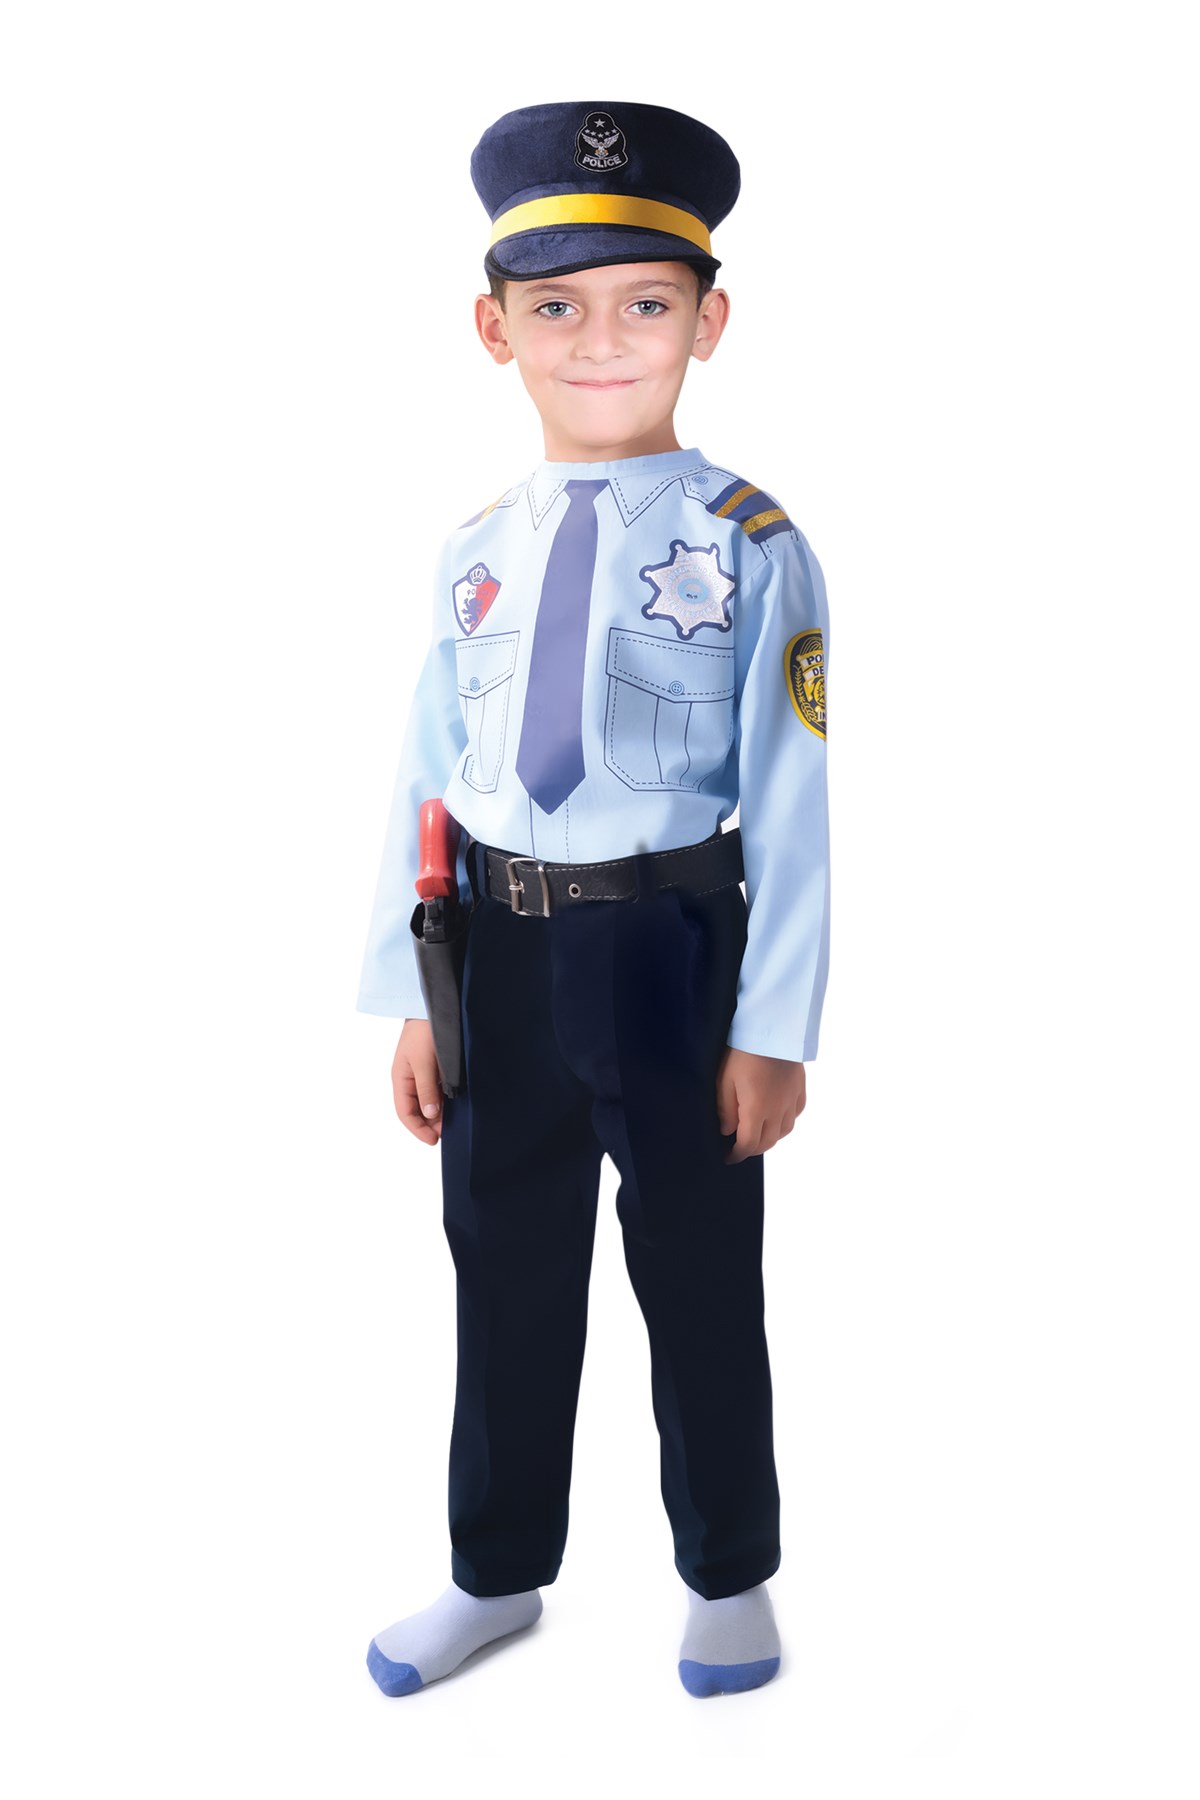 Polis Kostümü Çocuk Kıyafeti - Çocuk Polis Kostümü Modelleri | Oulabi Mir